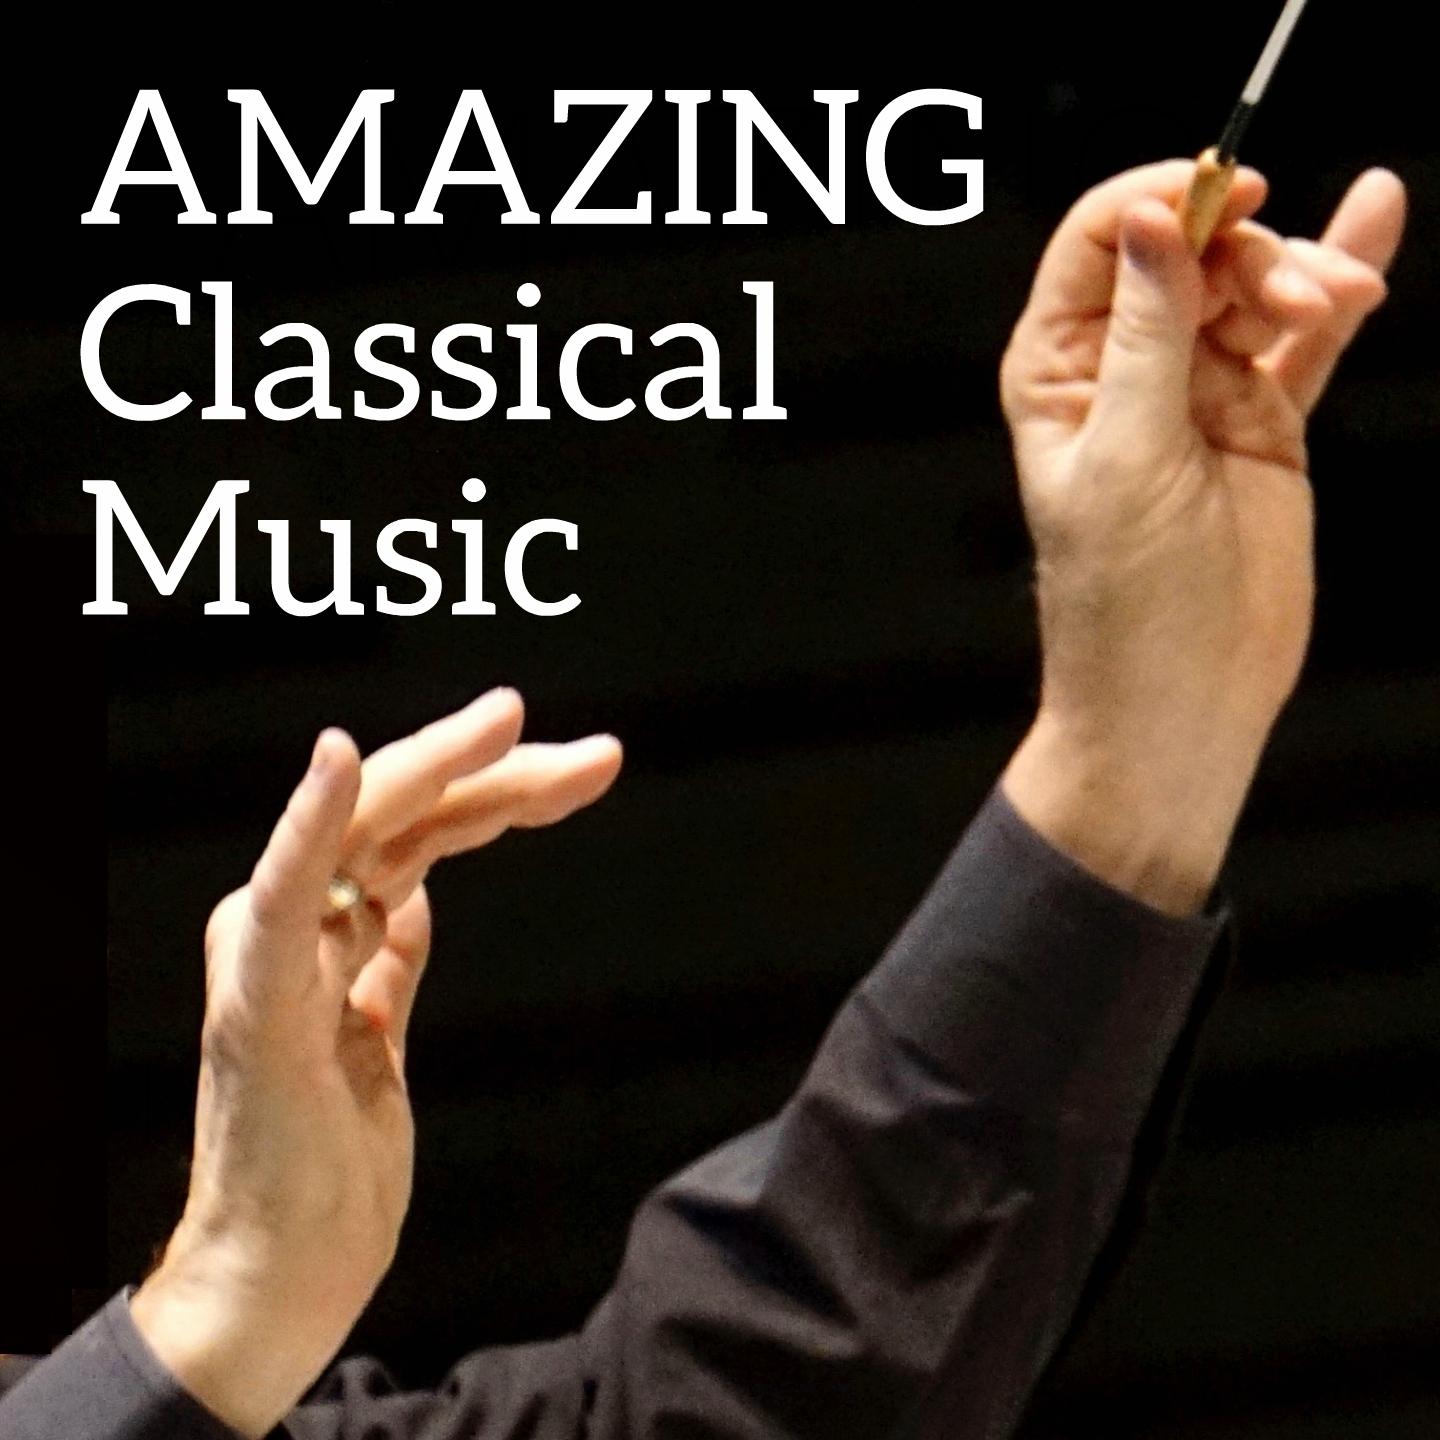 Amazing Classical Music